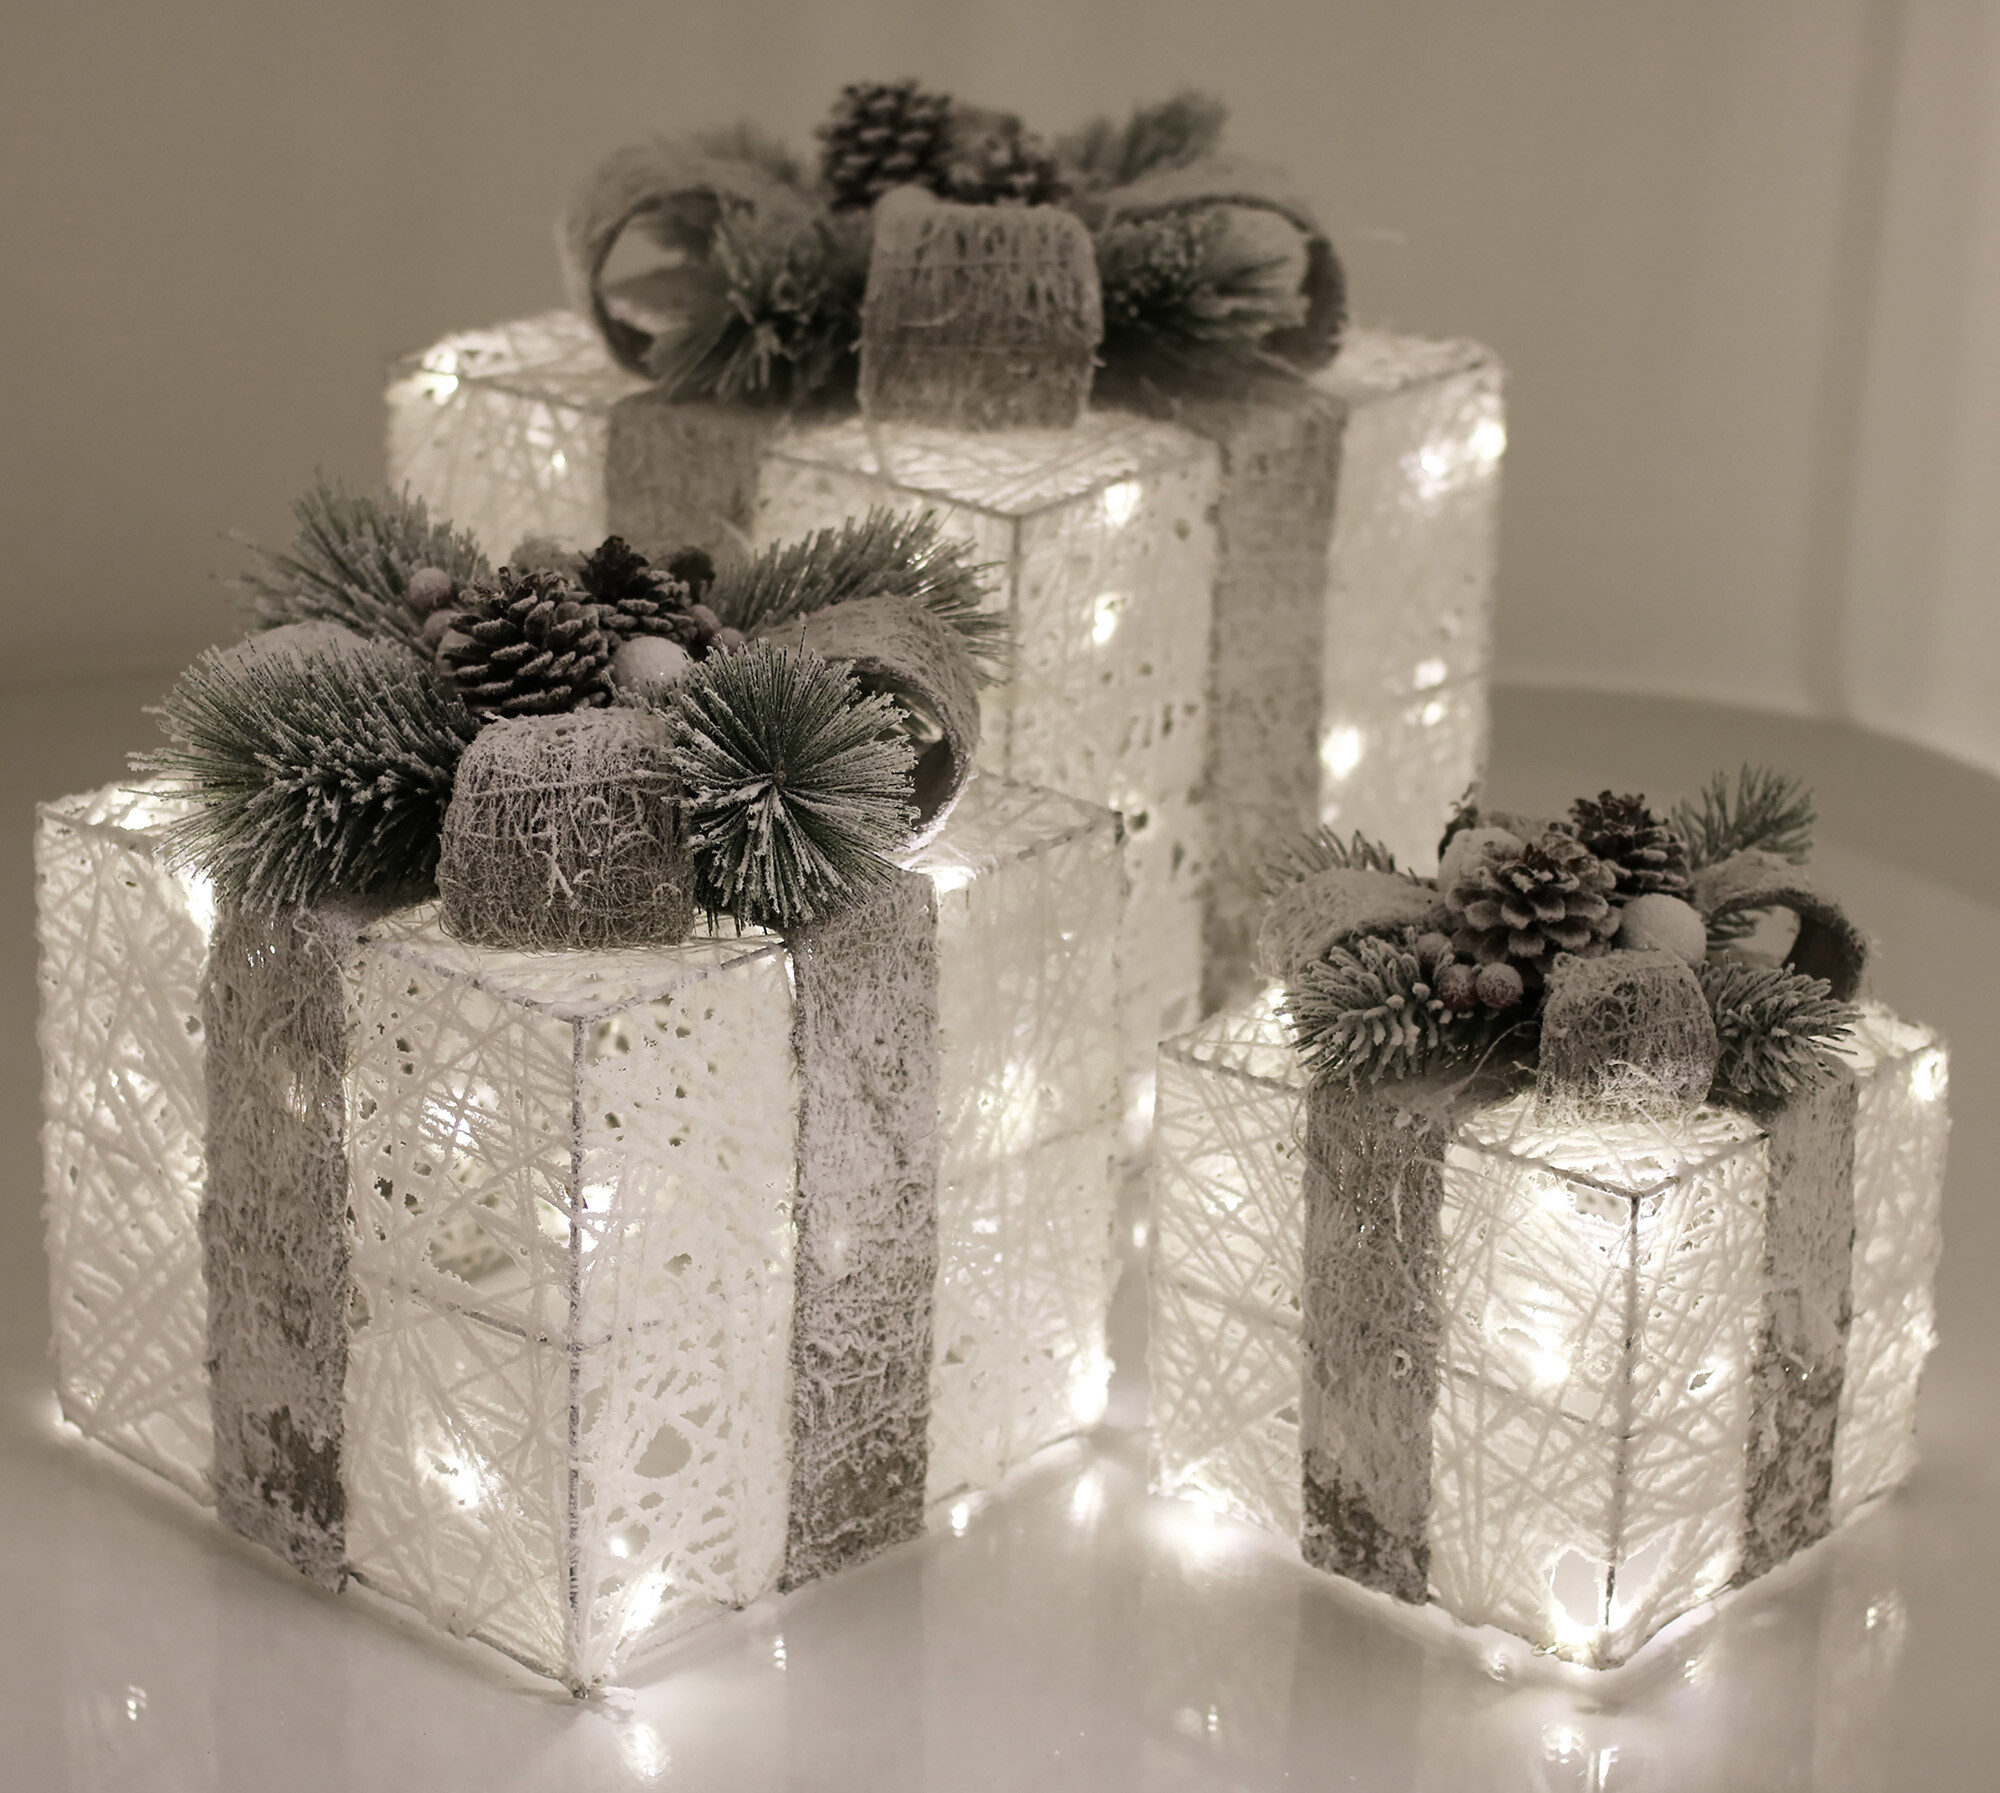 Julepakker med lys, sæt af 3 stk. hvid 230V NORDIC WINTER